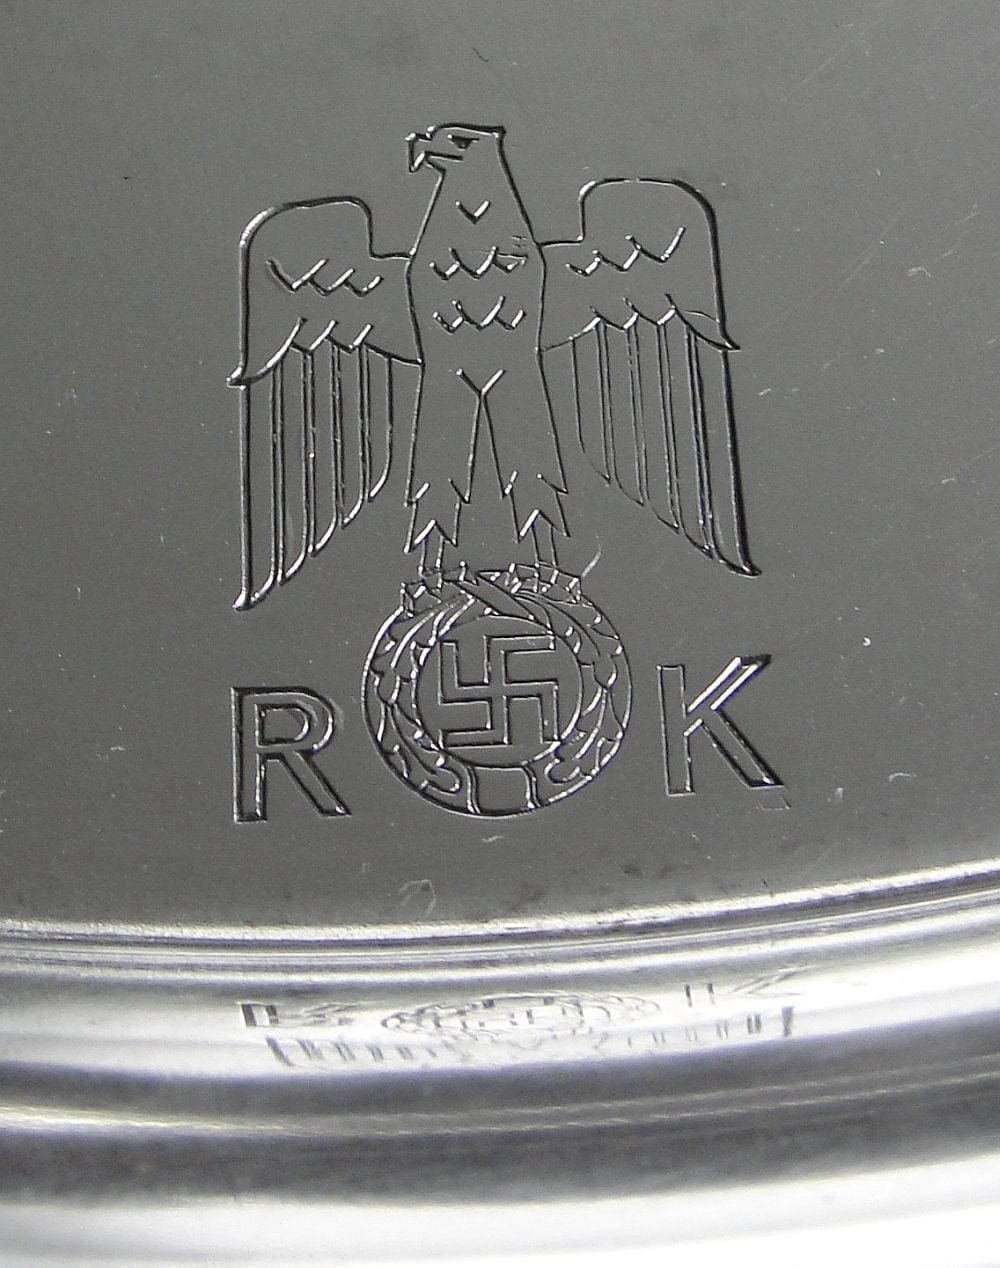 Reichskanzlei (Reich Chancellery) Serving Tray by Wellner